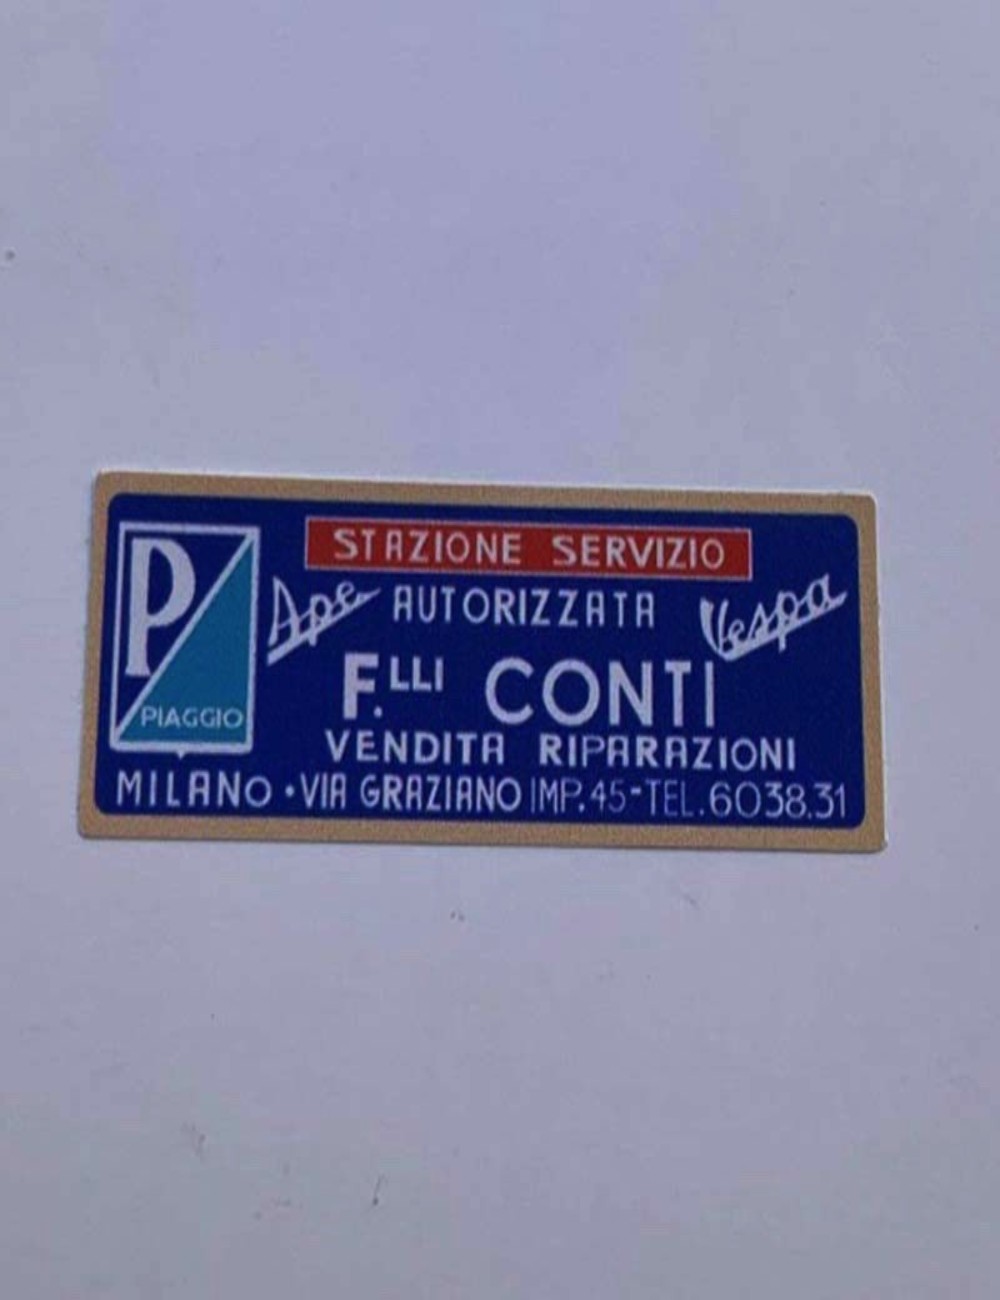 Adesivo concessionario F.lli Conti. Dimensione: 5,7 cm x 1,2 cm.